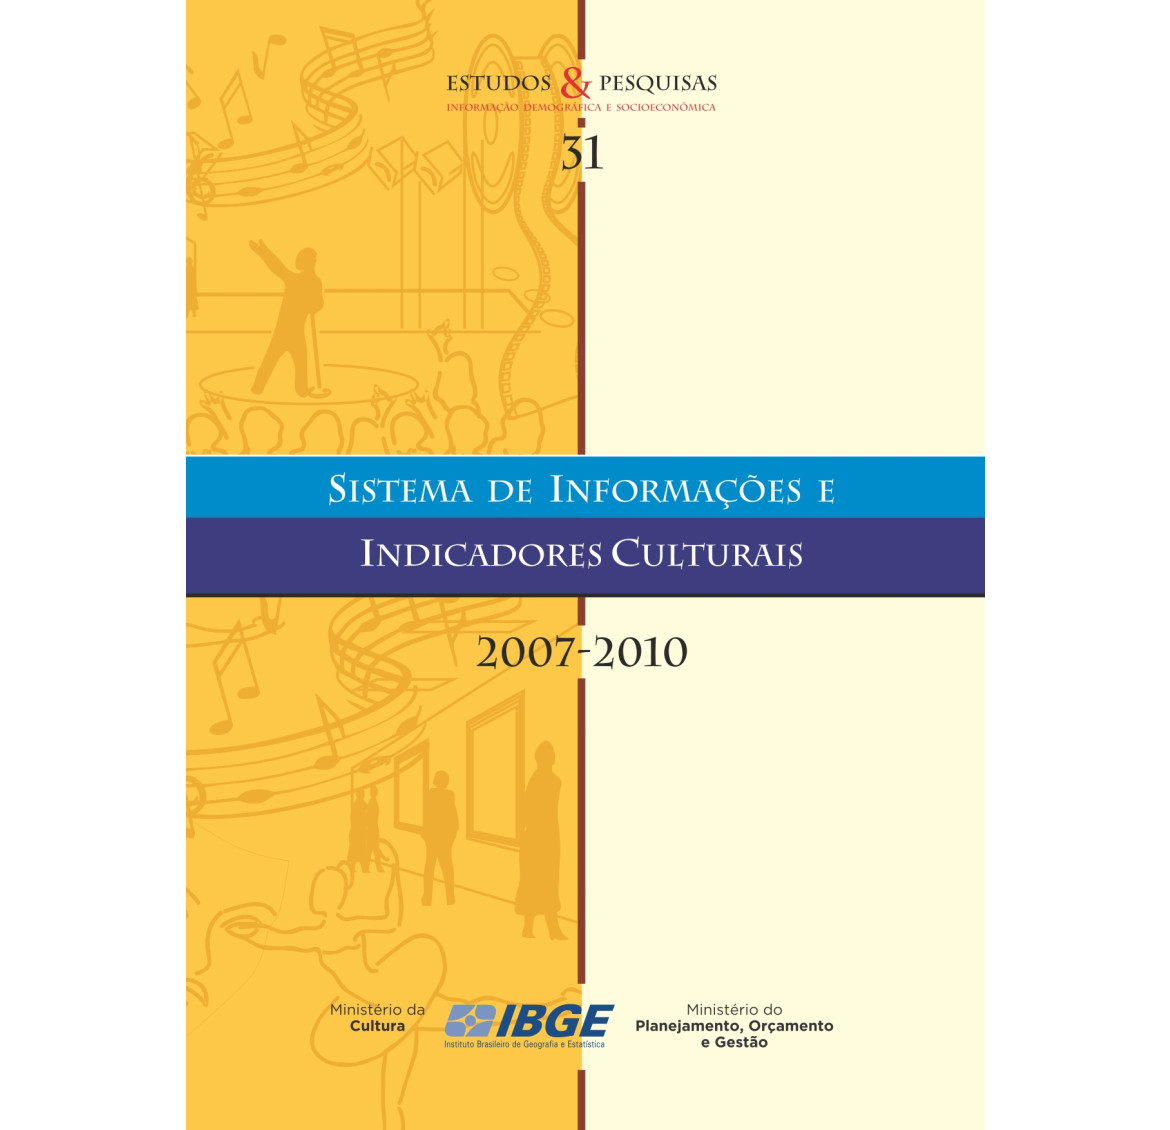 Sistema de informações e indicadores culturais 2007-2010